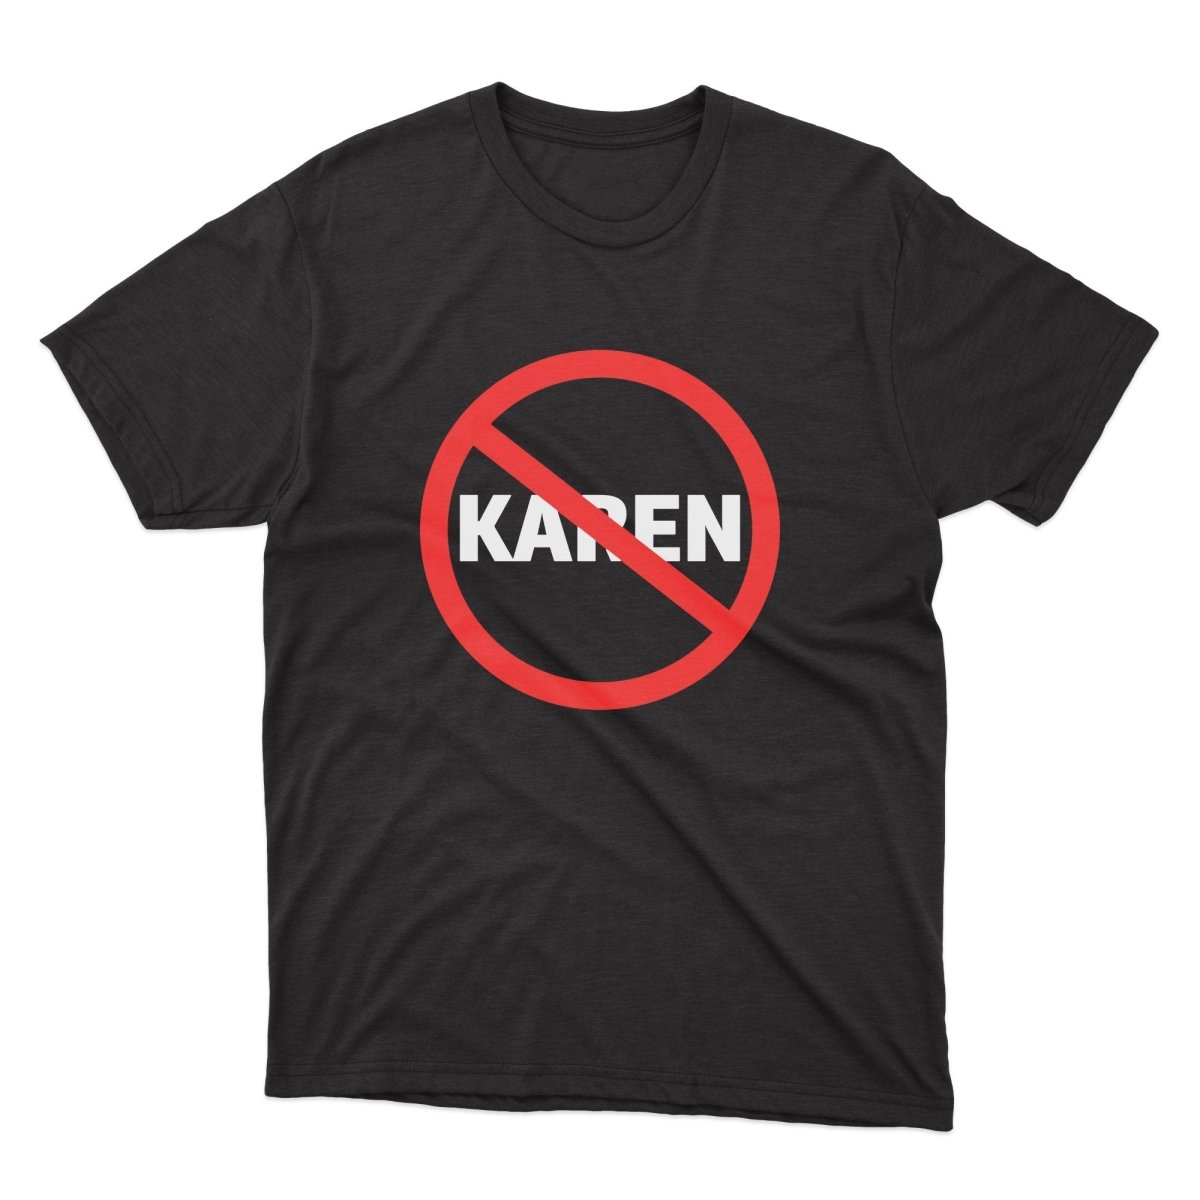 Anti Karen Shirt - stickerbullAnti Karen ShirtShirtsPrintifystickerbull12802886481844159428BlackSa black t - shirt with a red circle that says karen